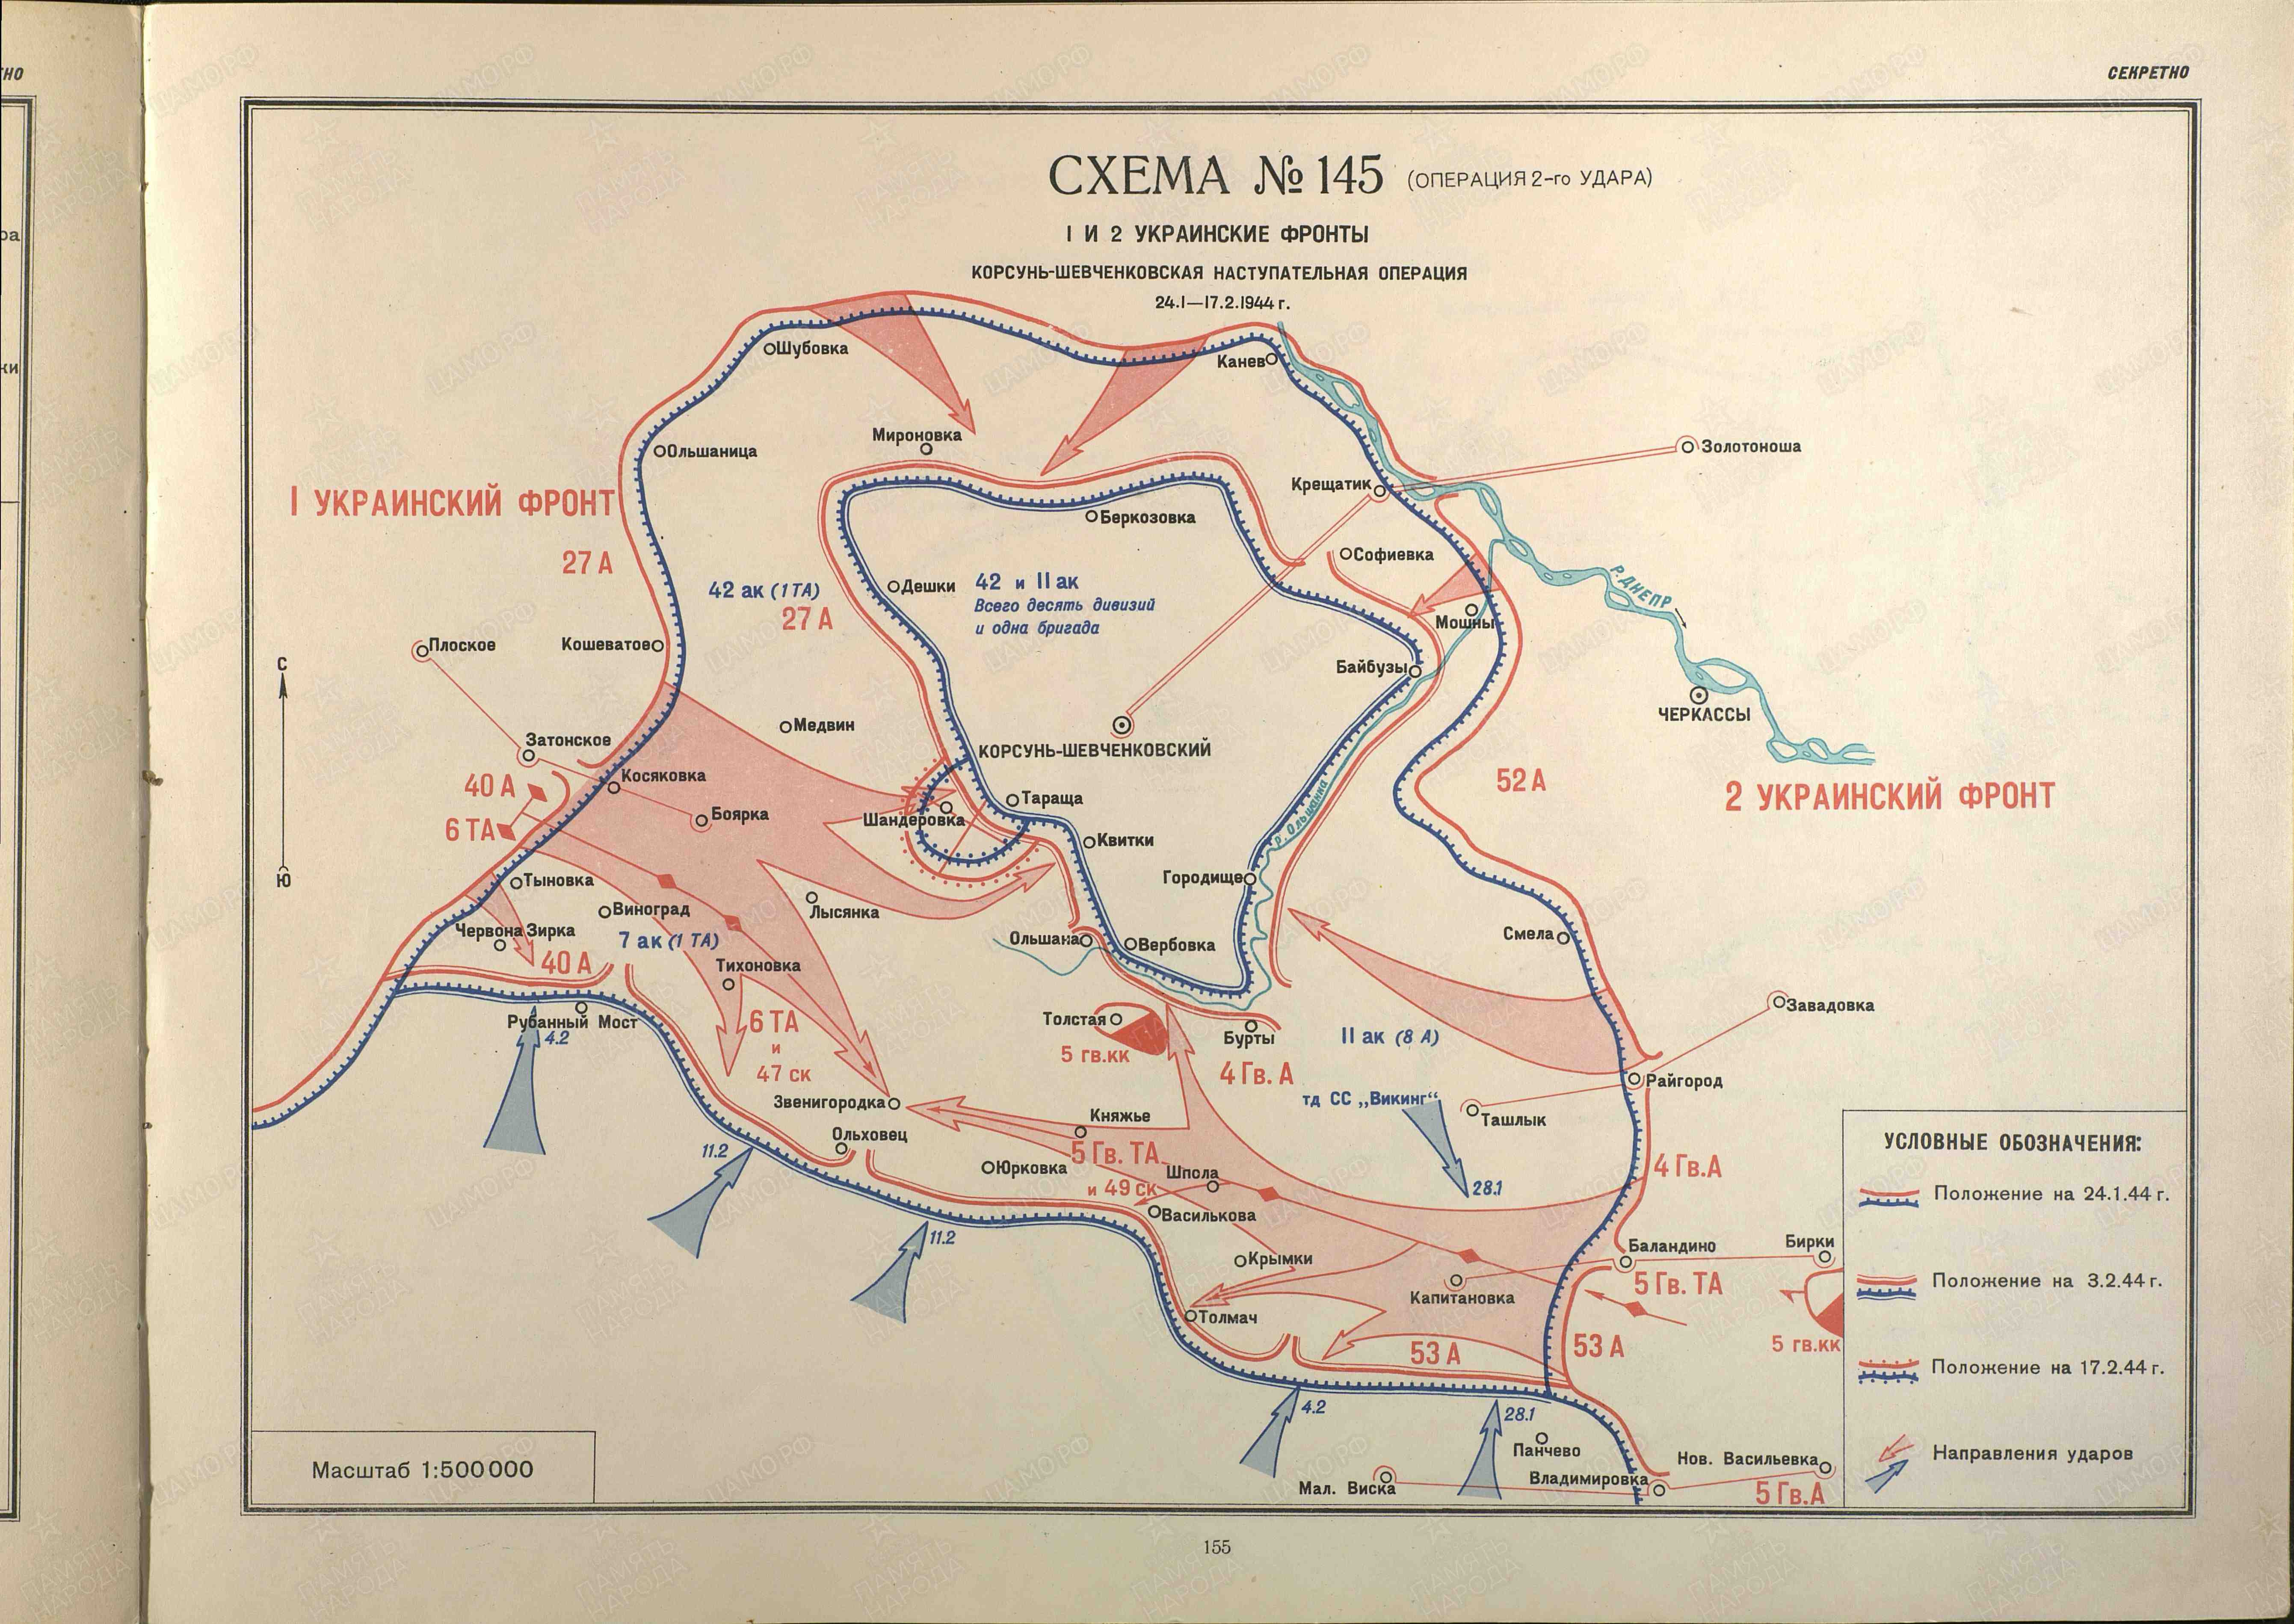 Наступательная операция советских войск в 1944